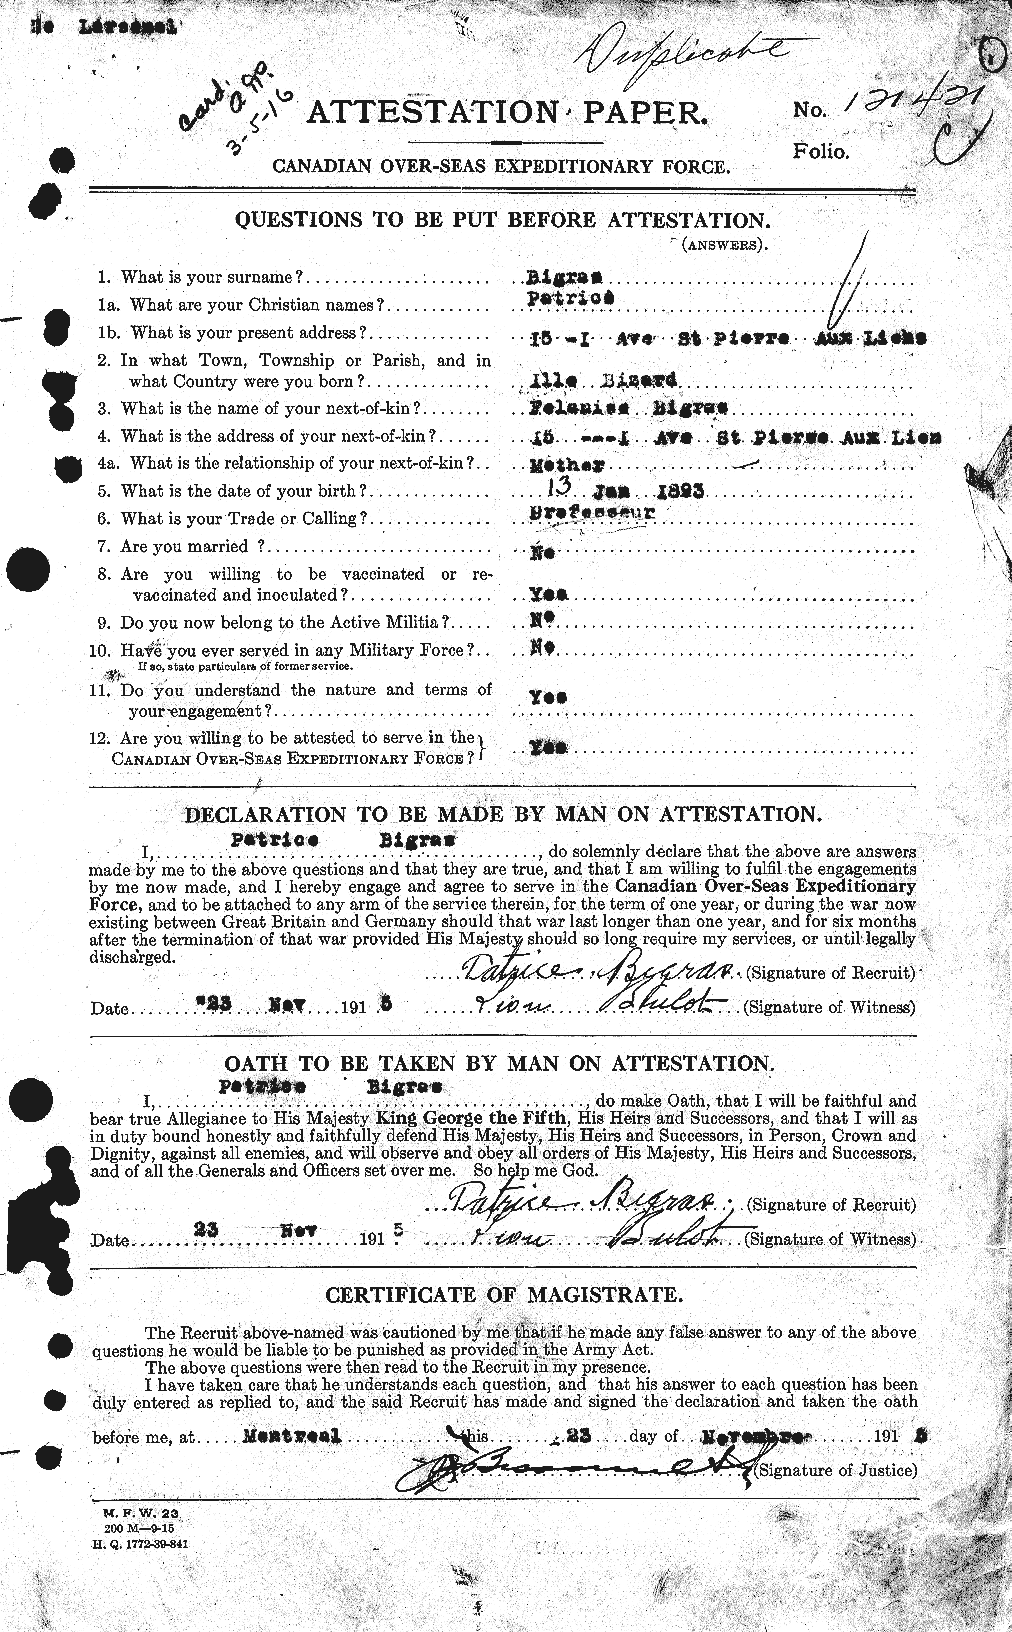 Dossiers du Personnel de la Première Guerre mondiale - CEC 239053a